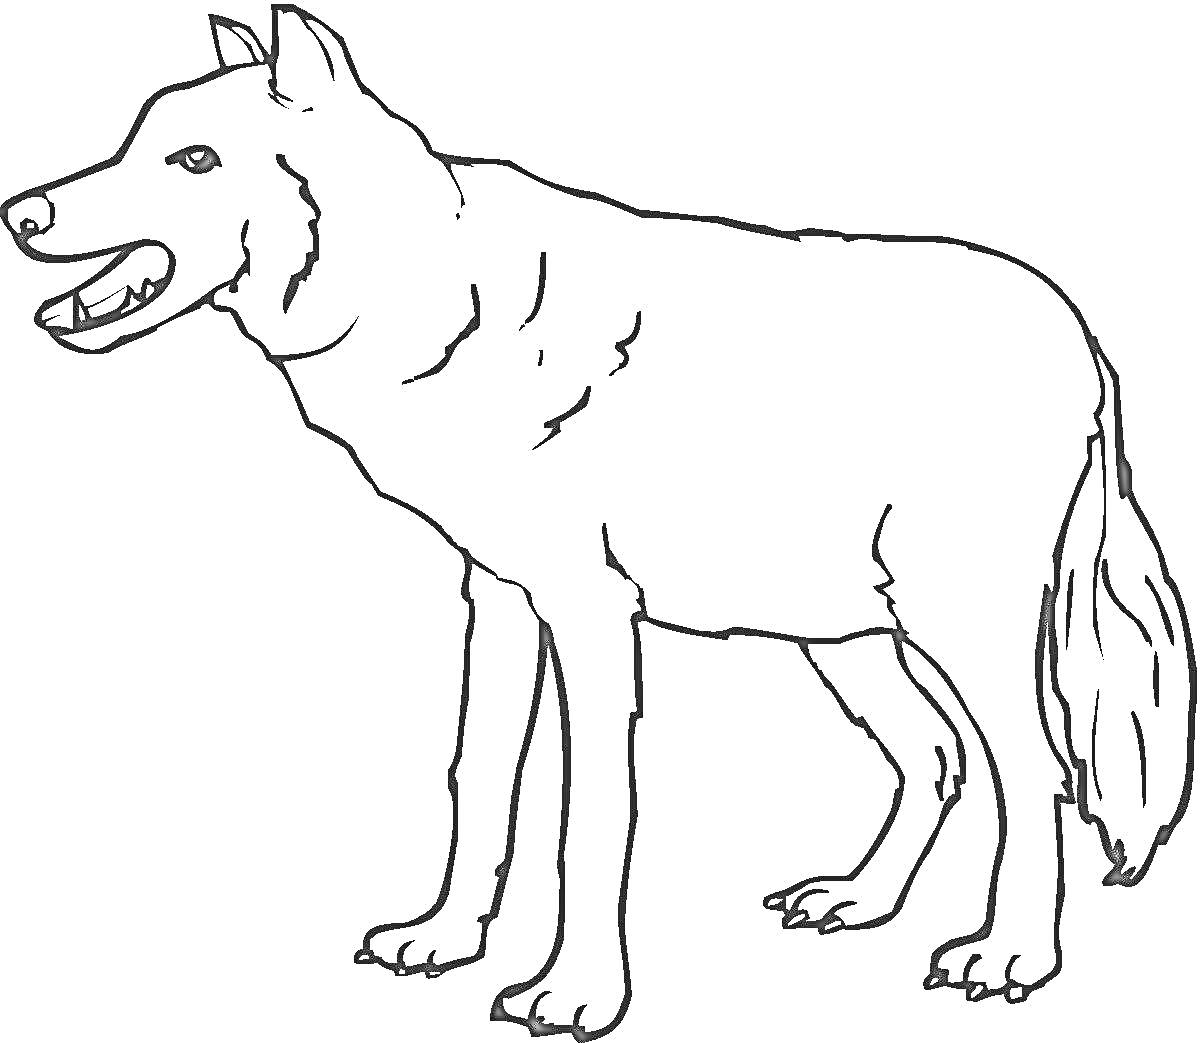 Раскраска Волк с оскаленной пастью и поднятым ухом, стоящий в профиль